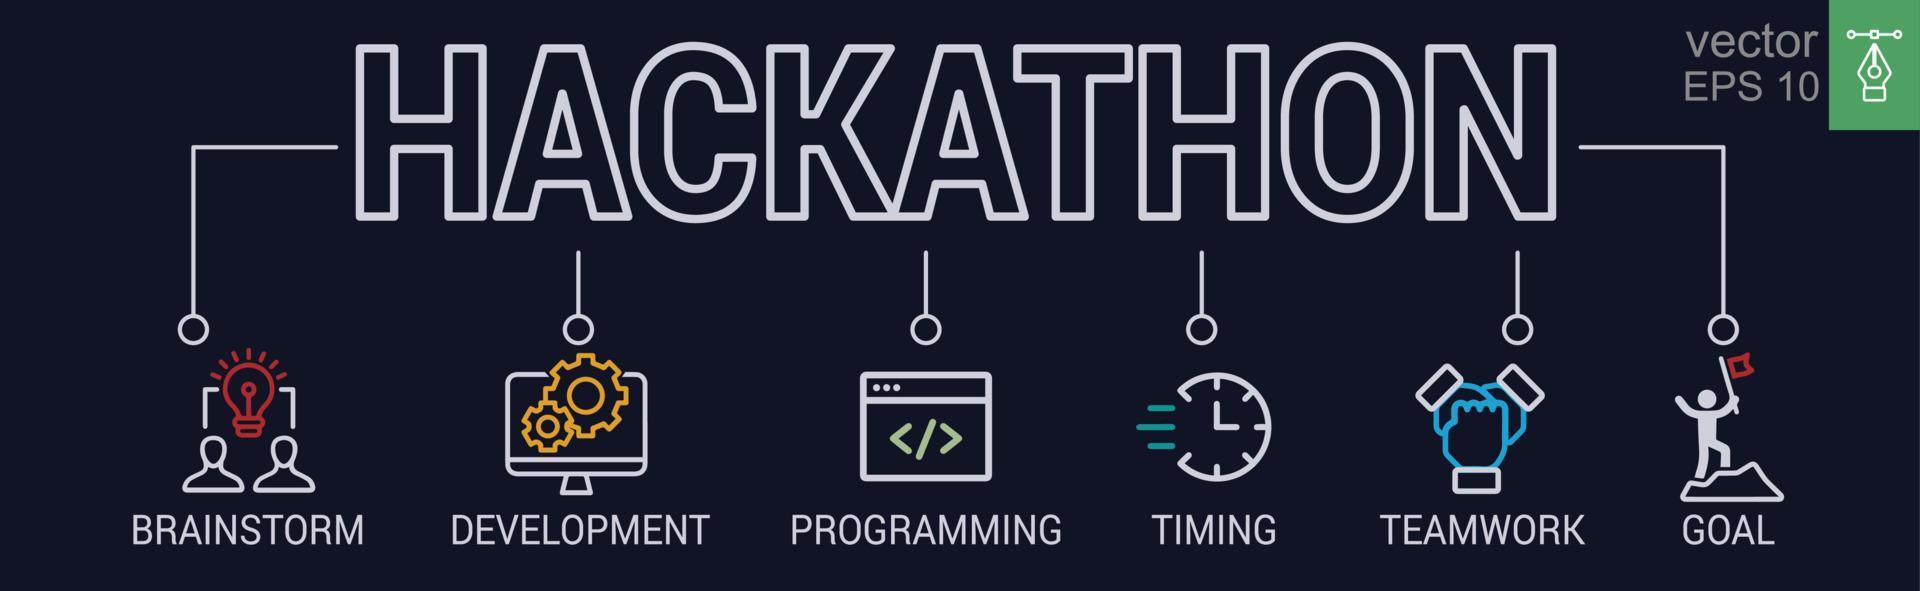 Hackathon-Design Sprint-ähnliches Event-Banner. herausforderung, programmierung, idee, online, strategie, technik. vektorillustrationskonzept mit schlüsselwörtern und symbolen. Folge 10. vektor